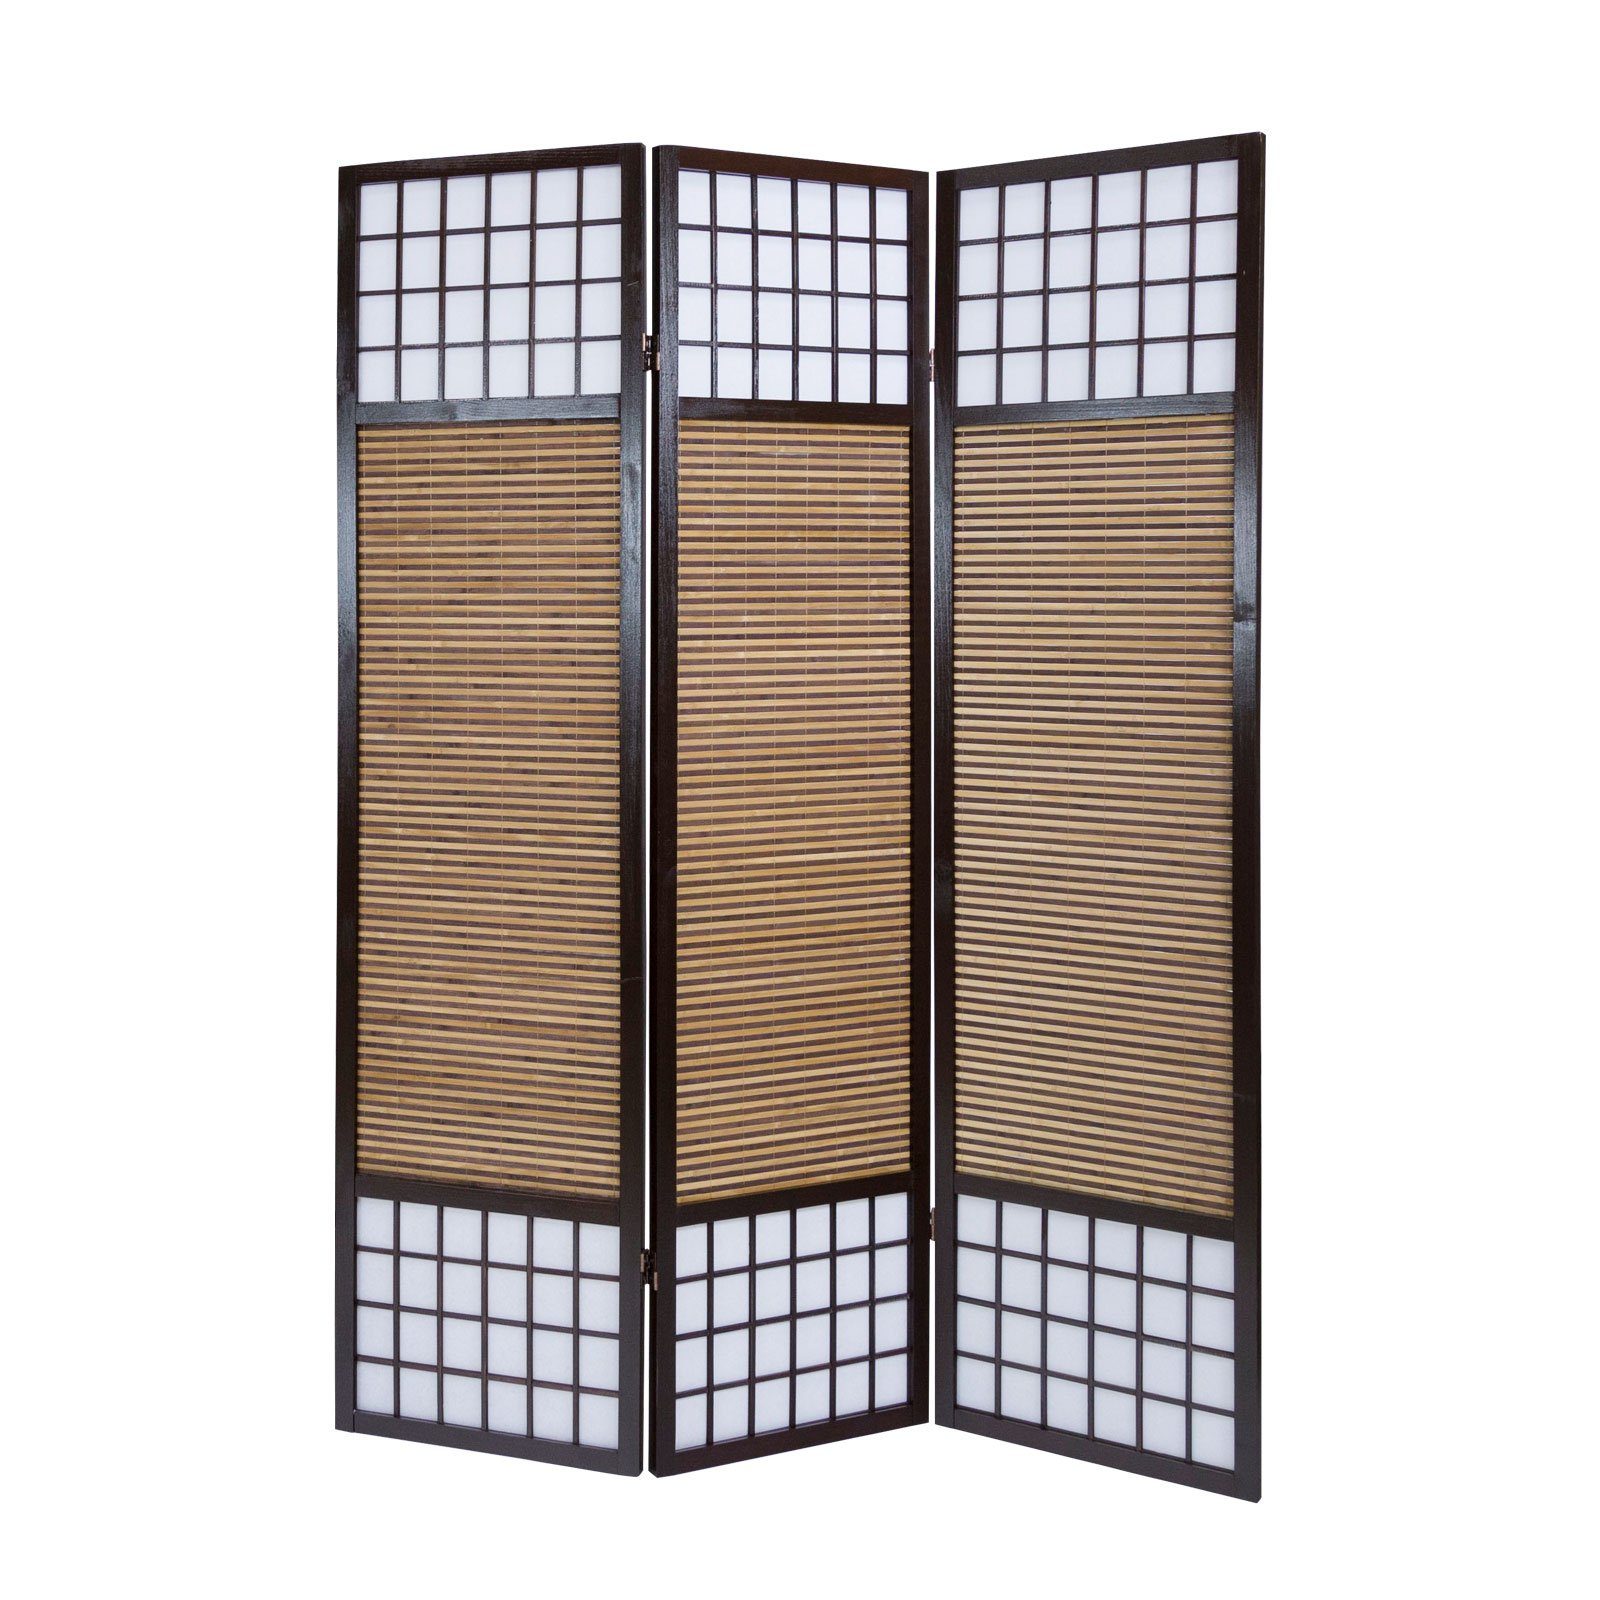 Homestyle4u Paravent Paravent Holz Raumteiler Bambus spanische Wand Trennwand Sichtschutz, 3-teilig